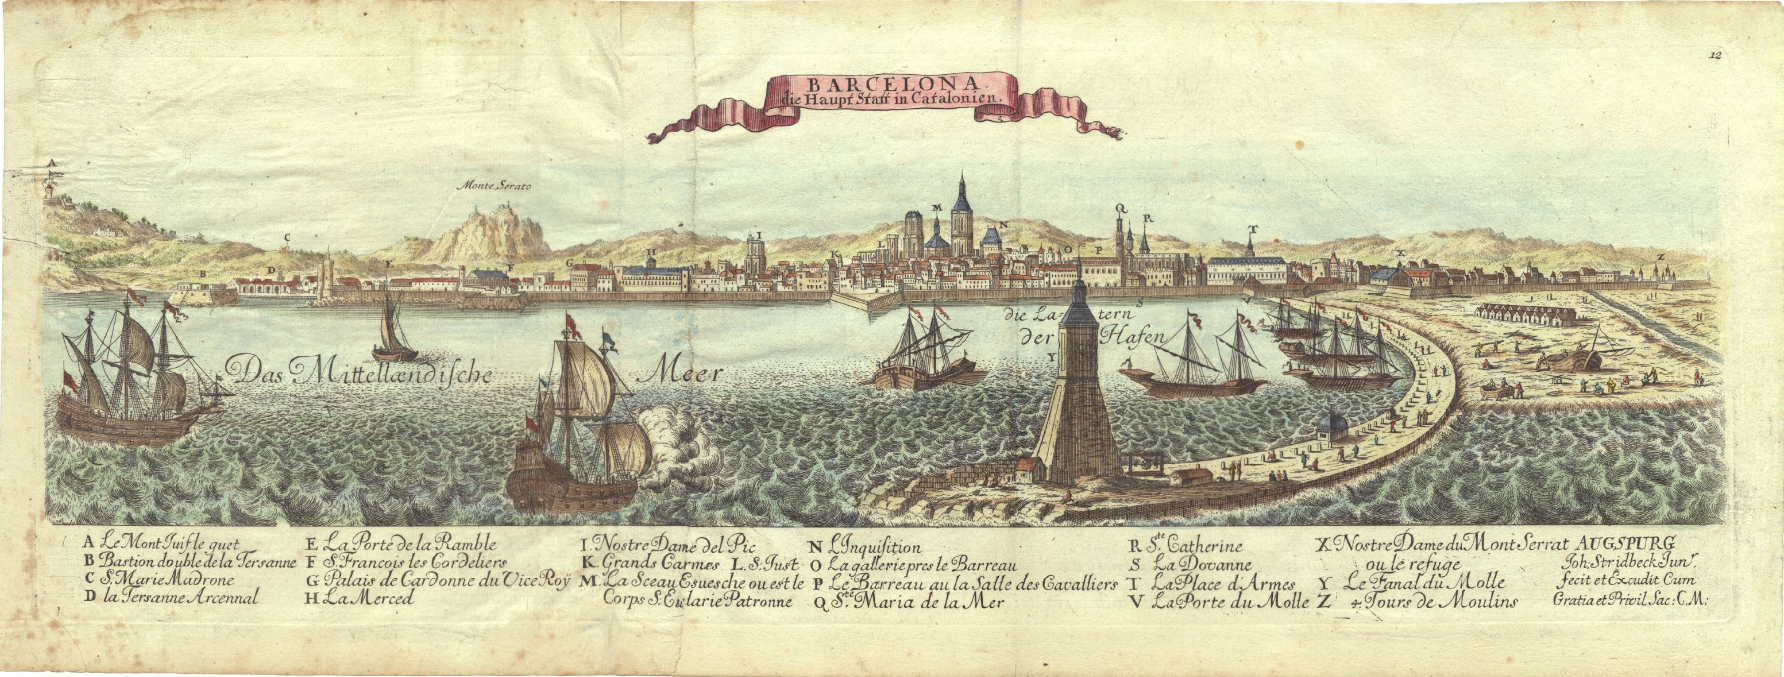 Vista de Barcelona a principios del siglo XVIII. Fuente Cartoteca de Catalunya